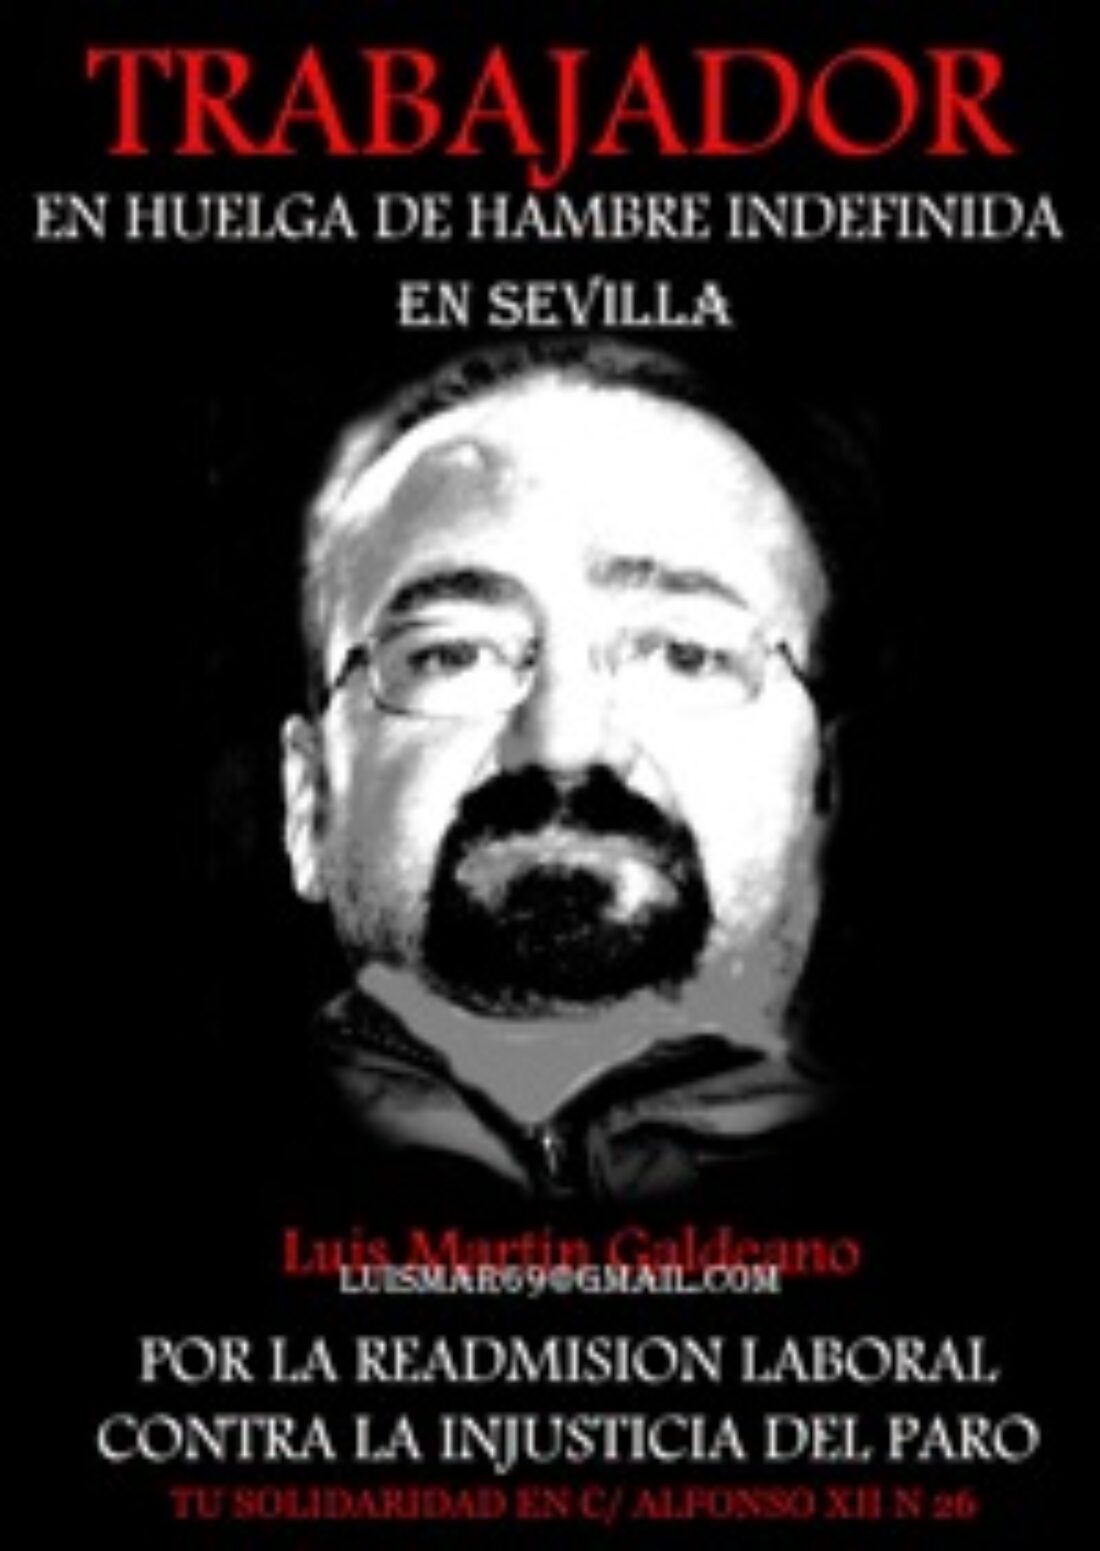 16 dic, Almería : Concentración en apoyo al trabajador de Egmasa despedido en huelga de hambre